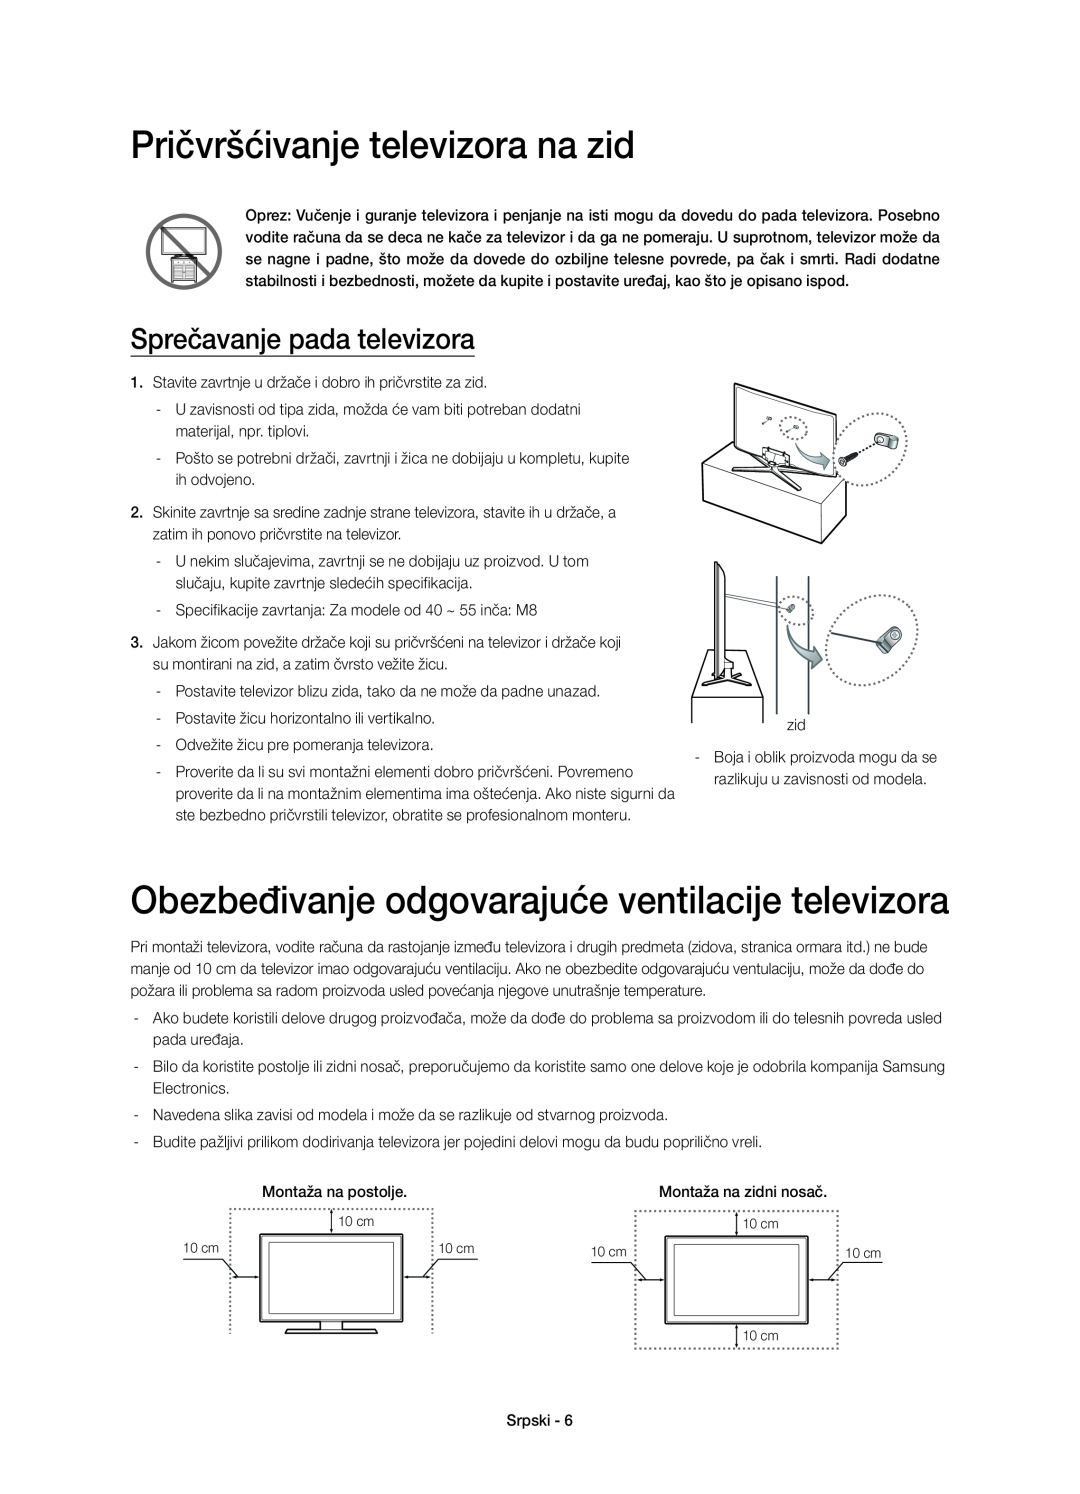 Samsung UE40H6700SLXXN, UE55H6700SLXXH Pričvršćivanje televizora na zid, Obezbeđivanje odgovarajuće ventilacije televizora 